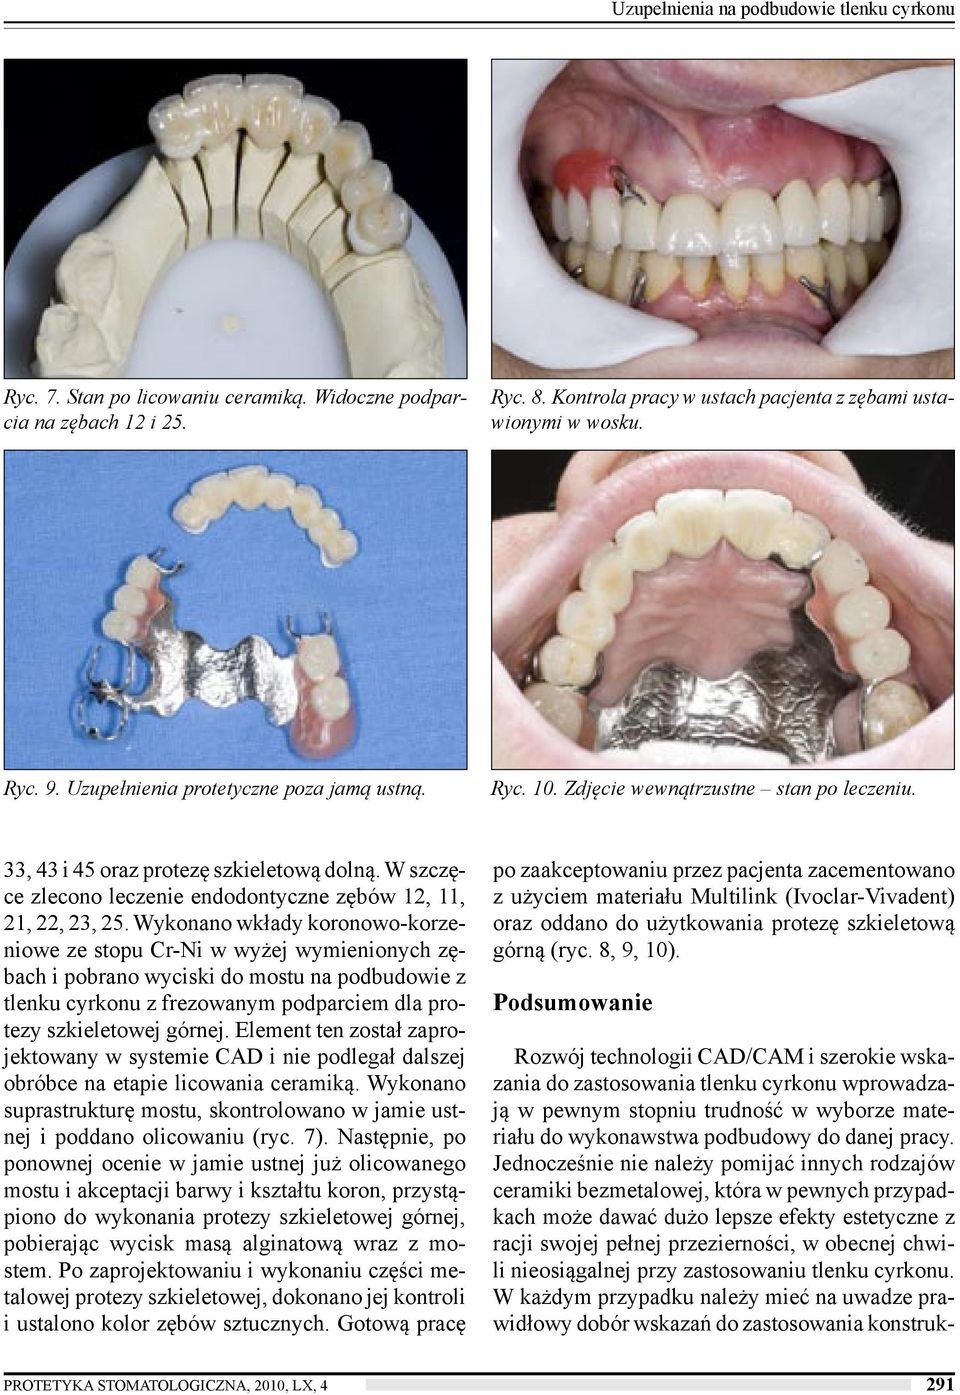 W szczęce zlecono leczenie endodontyczne zębów 12, 11, 21, 22, 23, 25.